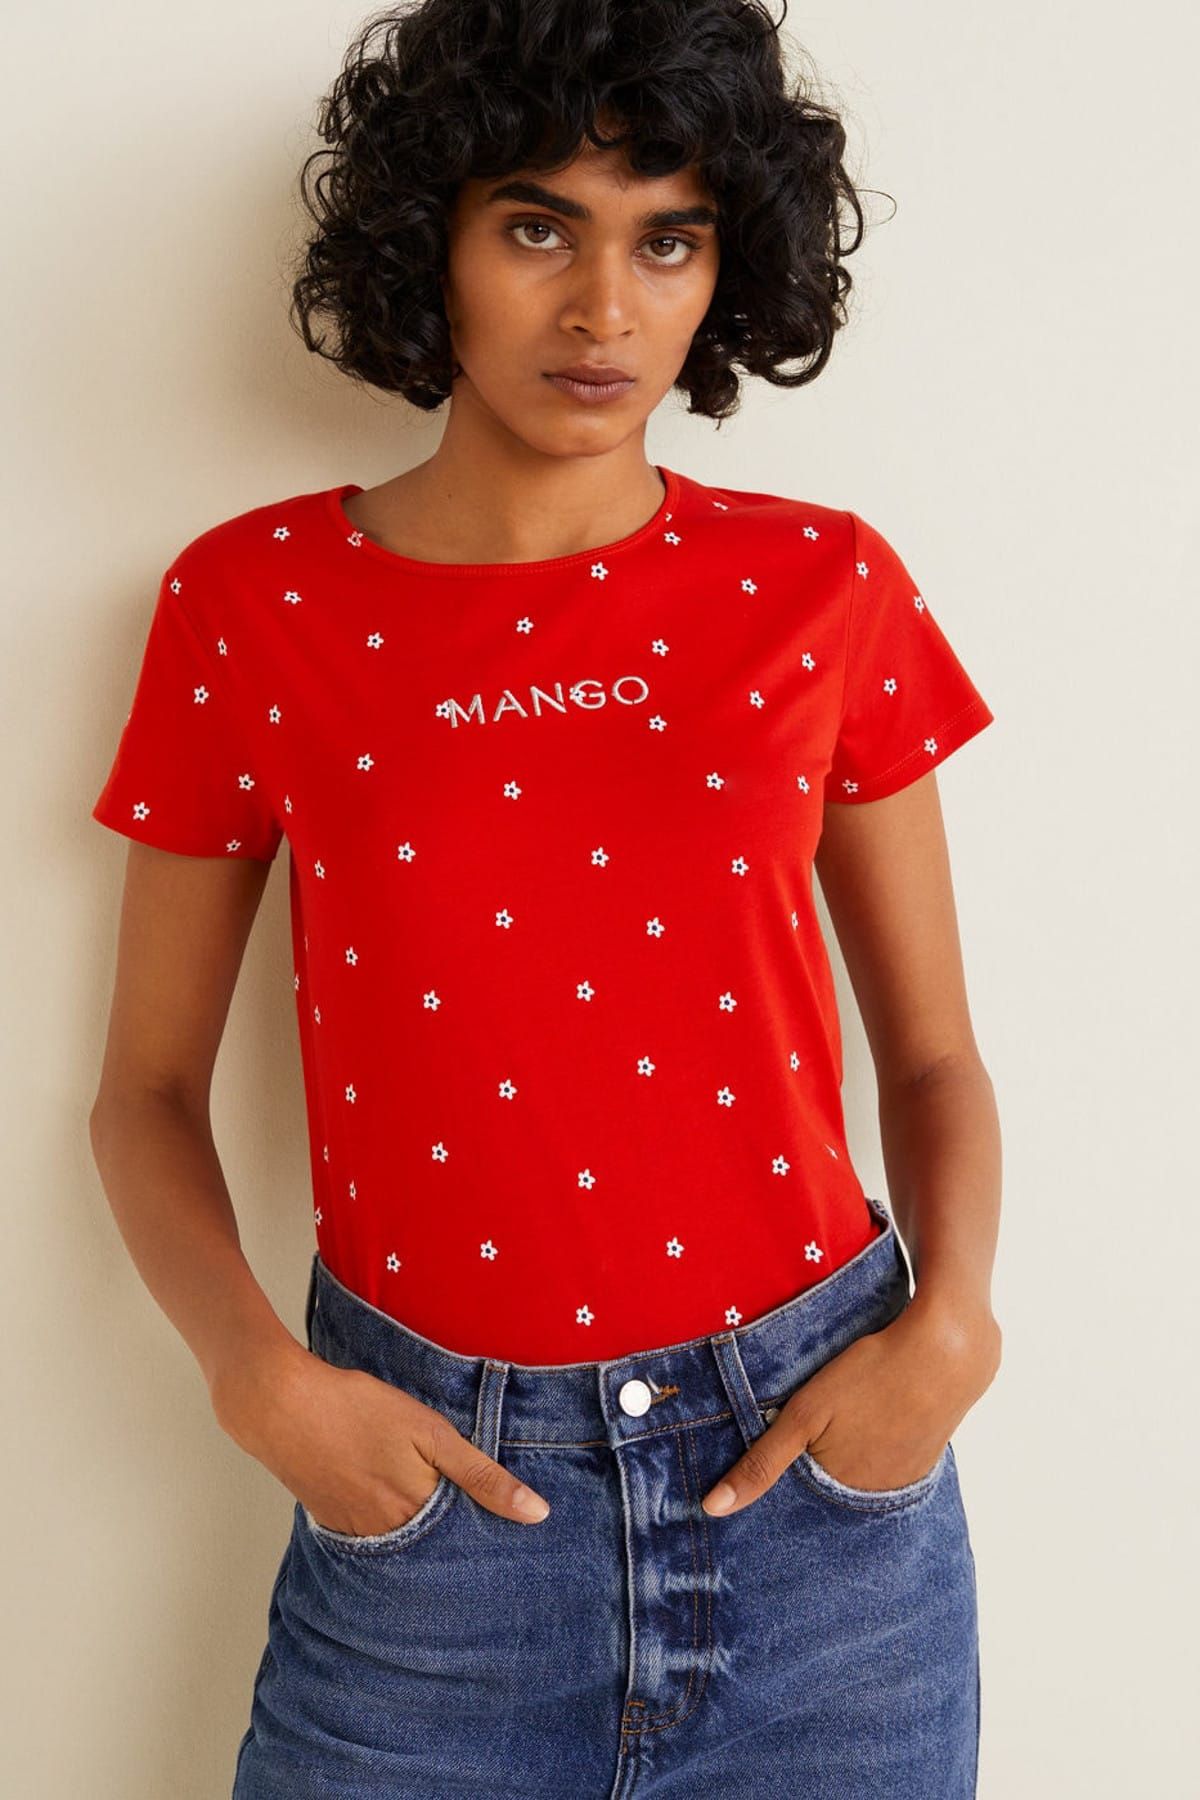 MANGO Kadın Kırmızı Logo Baskılı Tişört 43090845